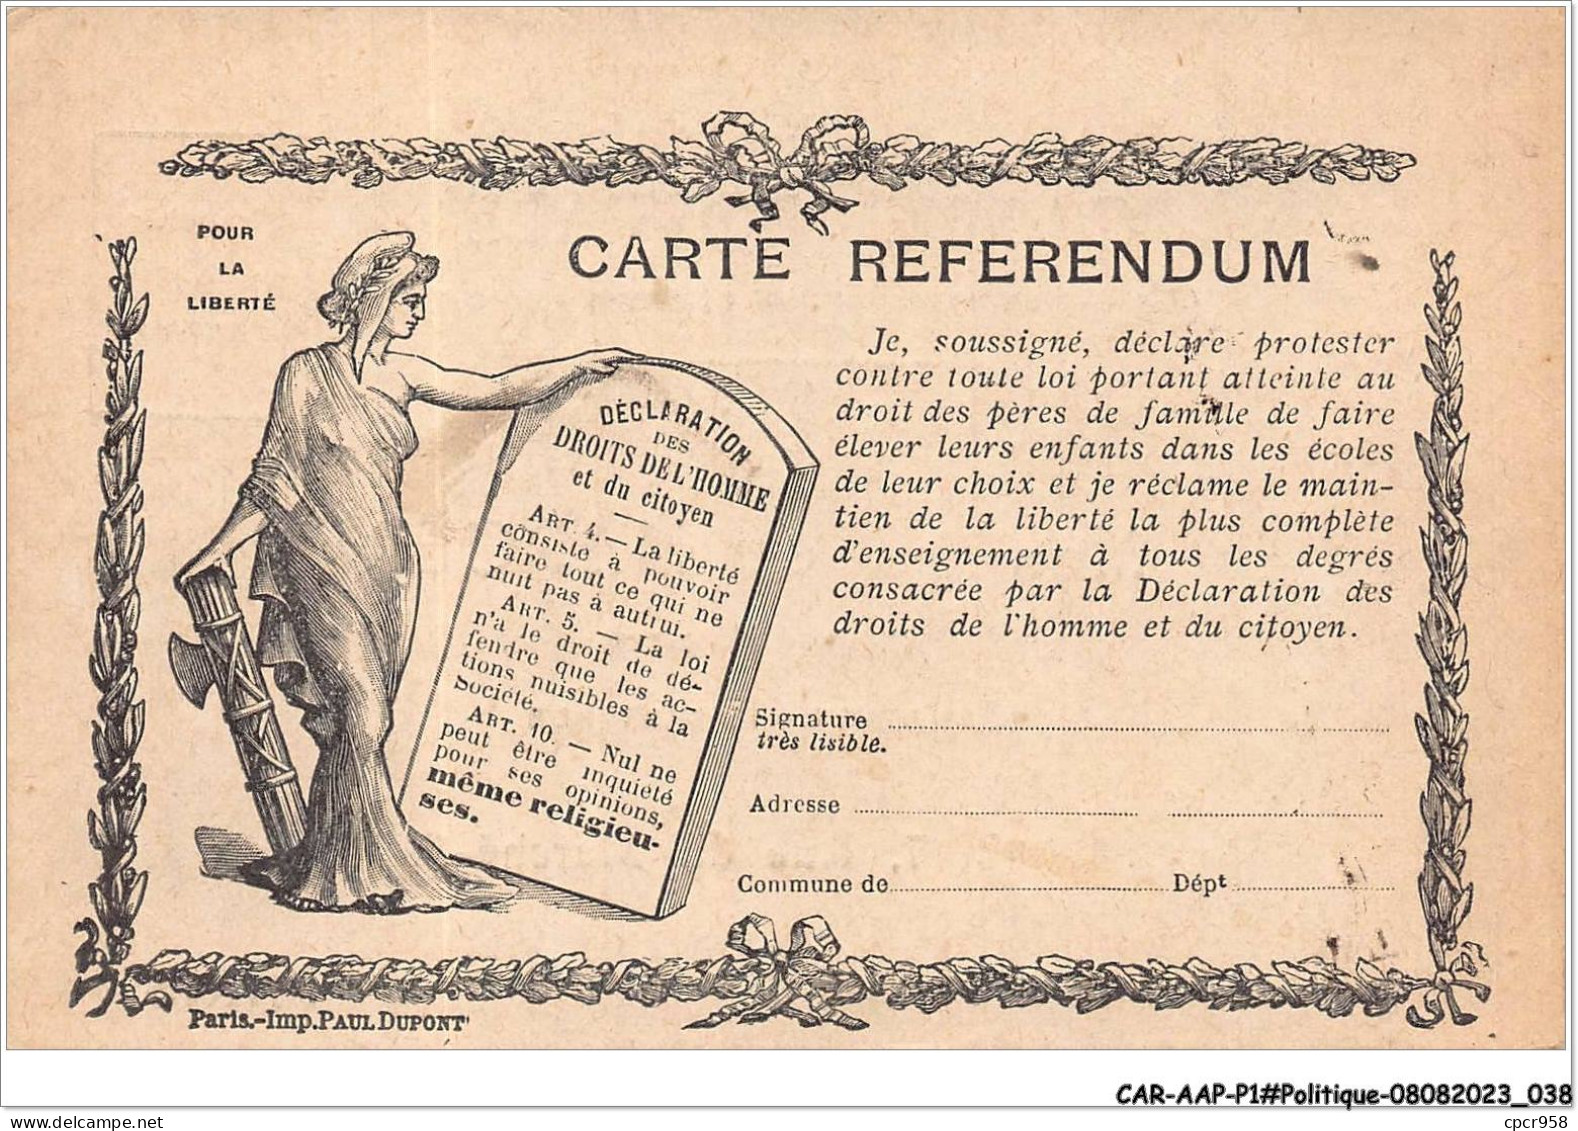 CAR-AAPP1-0020 - POLITIQUE - Carte Referendum - Partis Politiques & élections